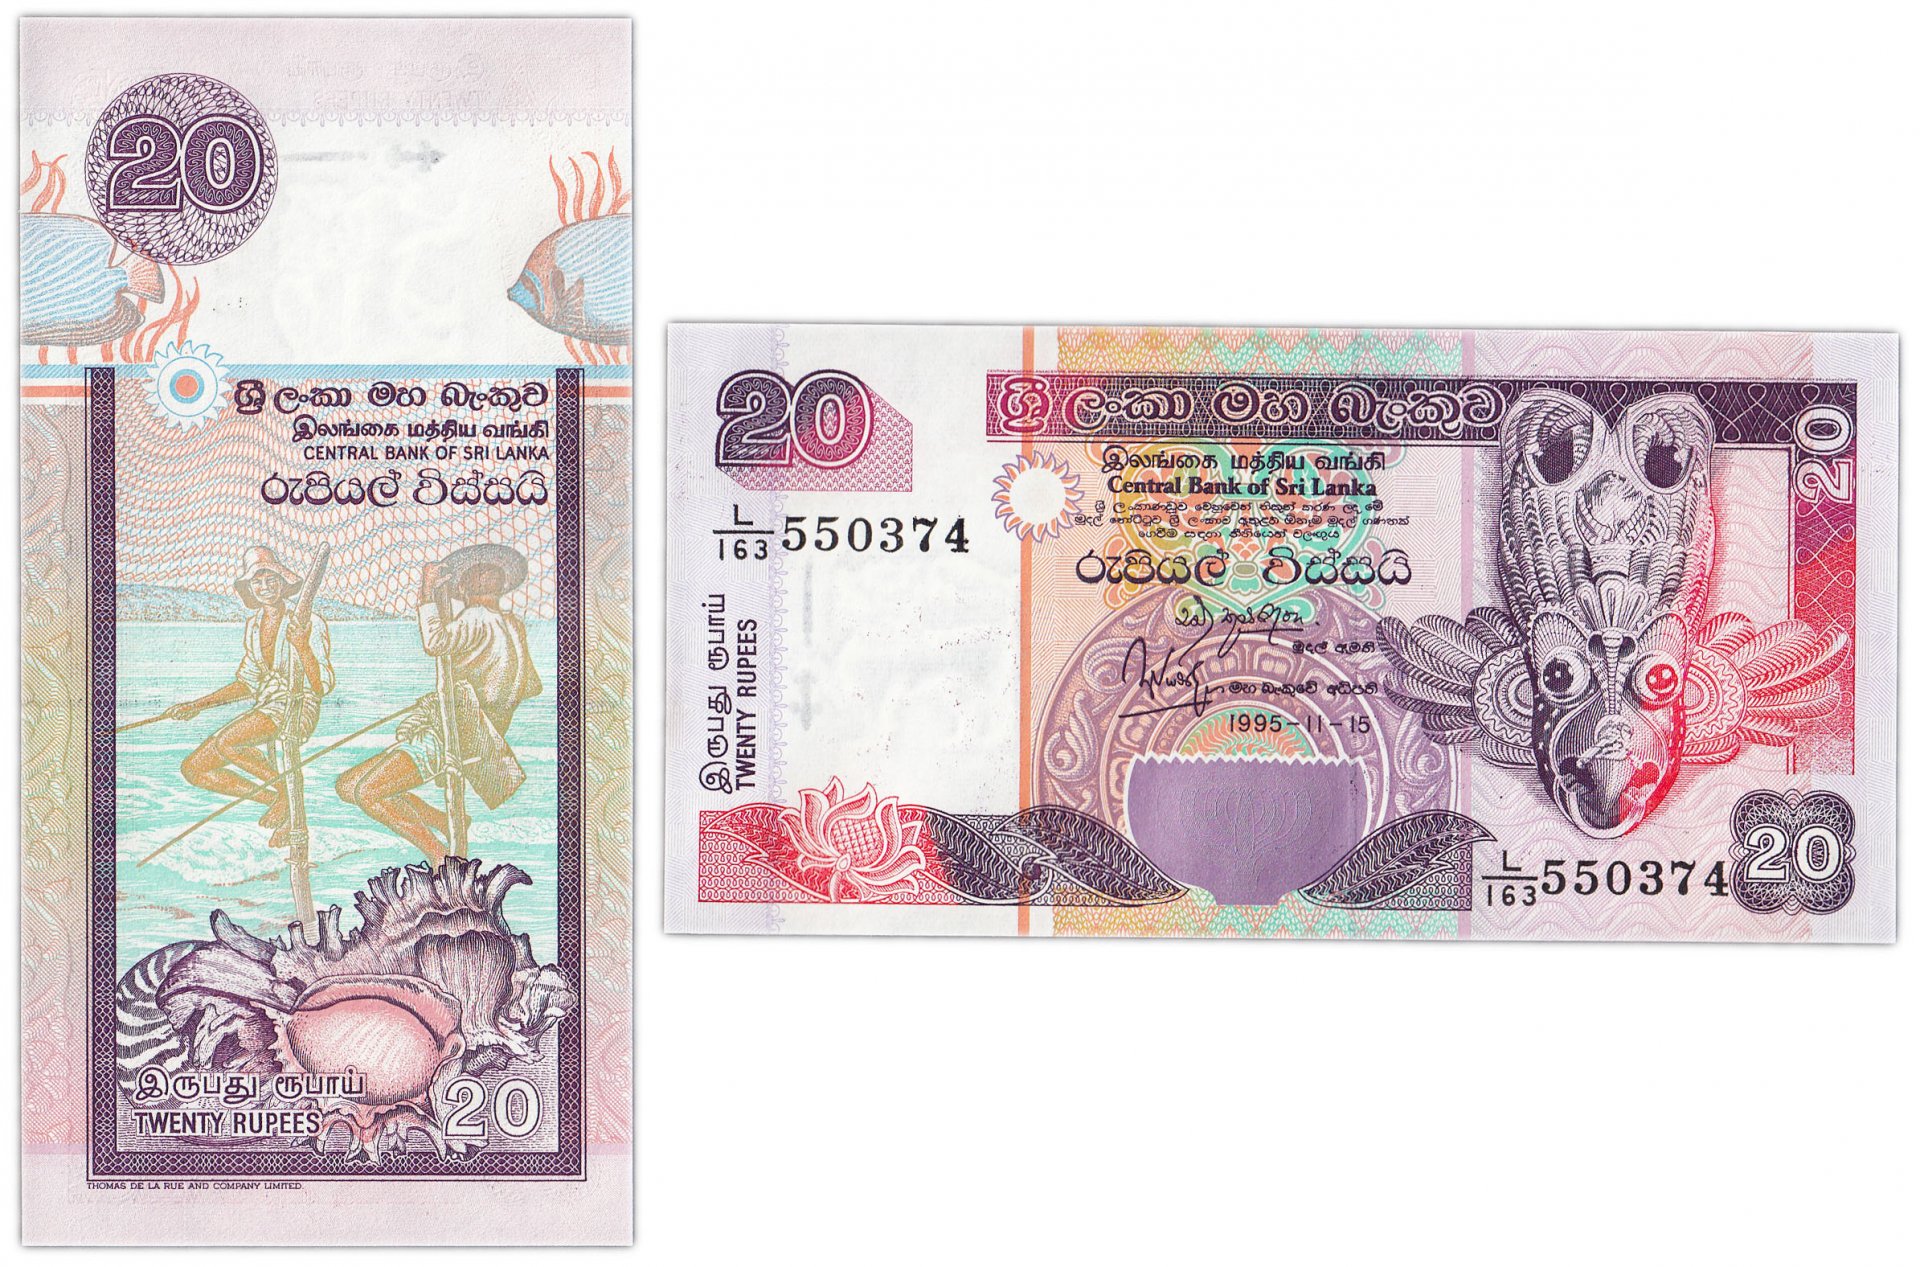 Ланкийская рупия к рублю на сегодня. 20 Рупий Шри Ланка. Банкнота 100 рупий Шри Ланка. Купюра 20 рупий Шри-Ланка. Шри-Ланка 20 рупий 2010 года.